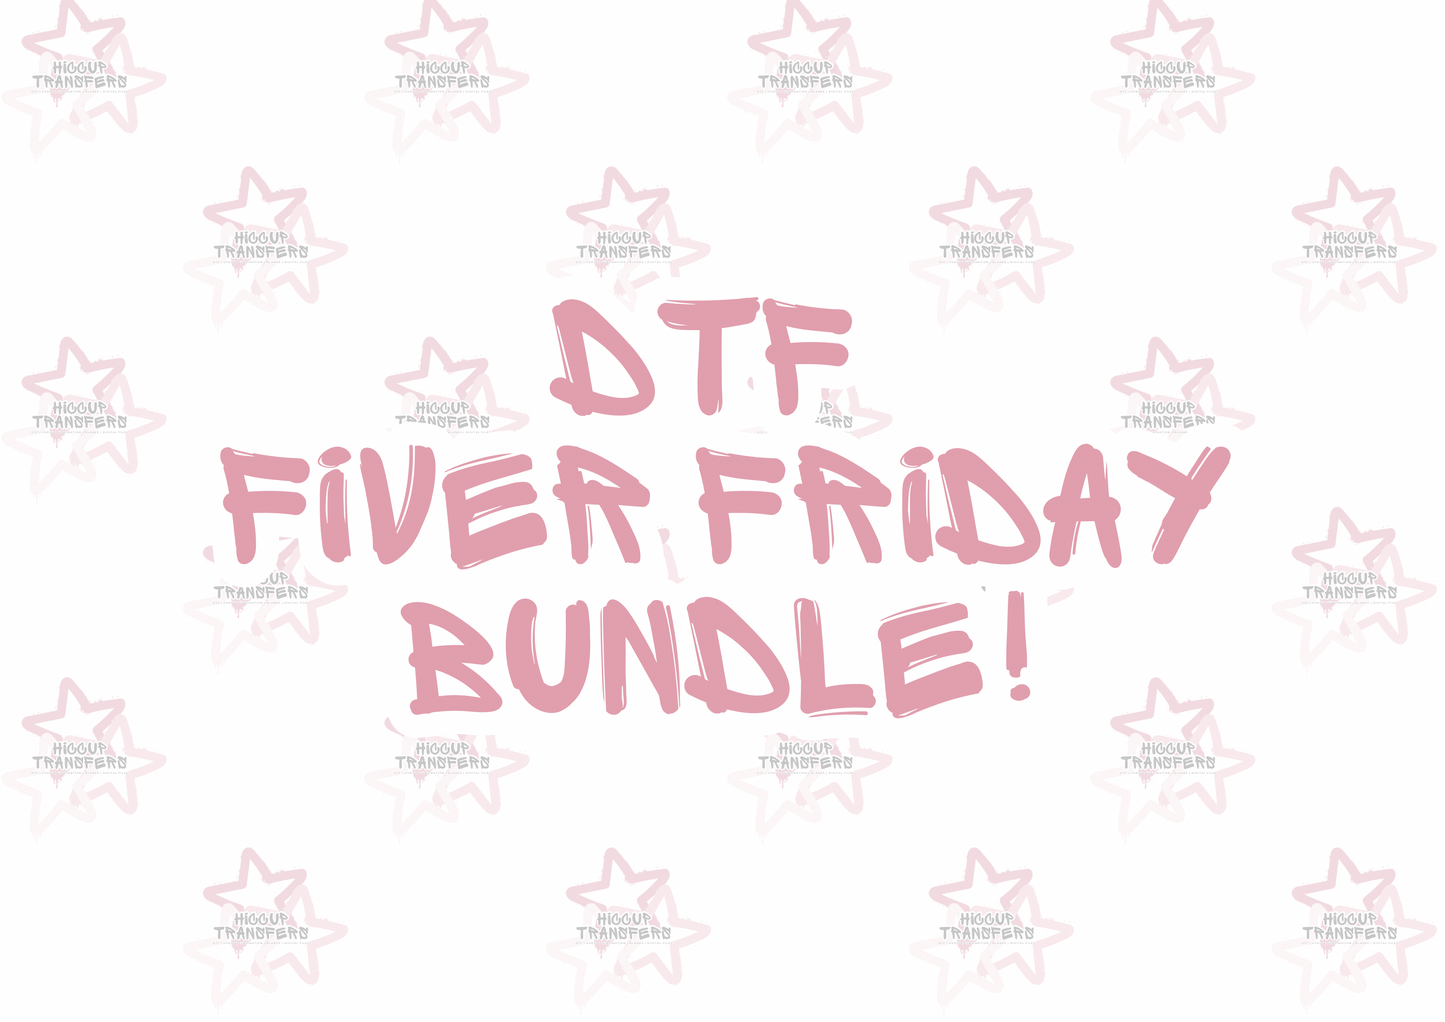 DTF Fiver Friday Bundle